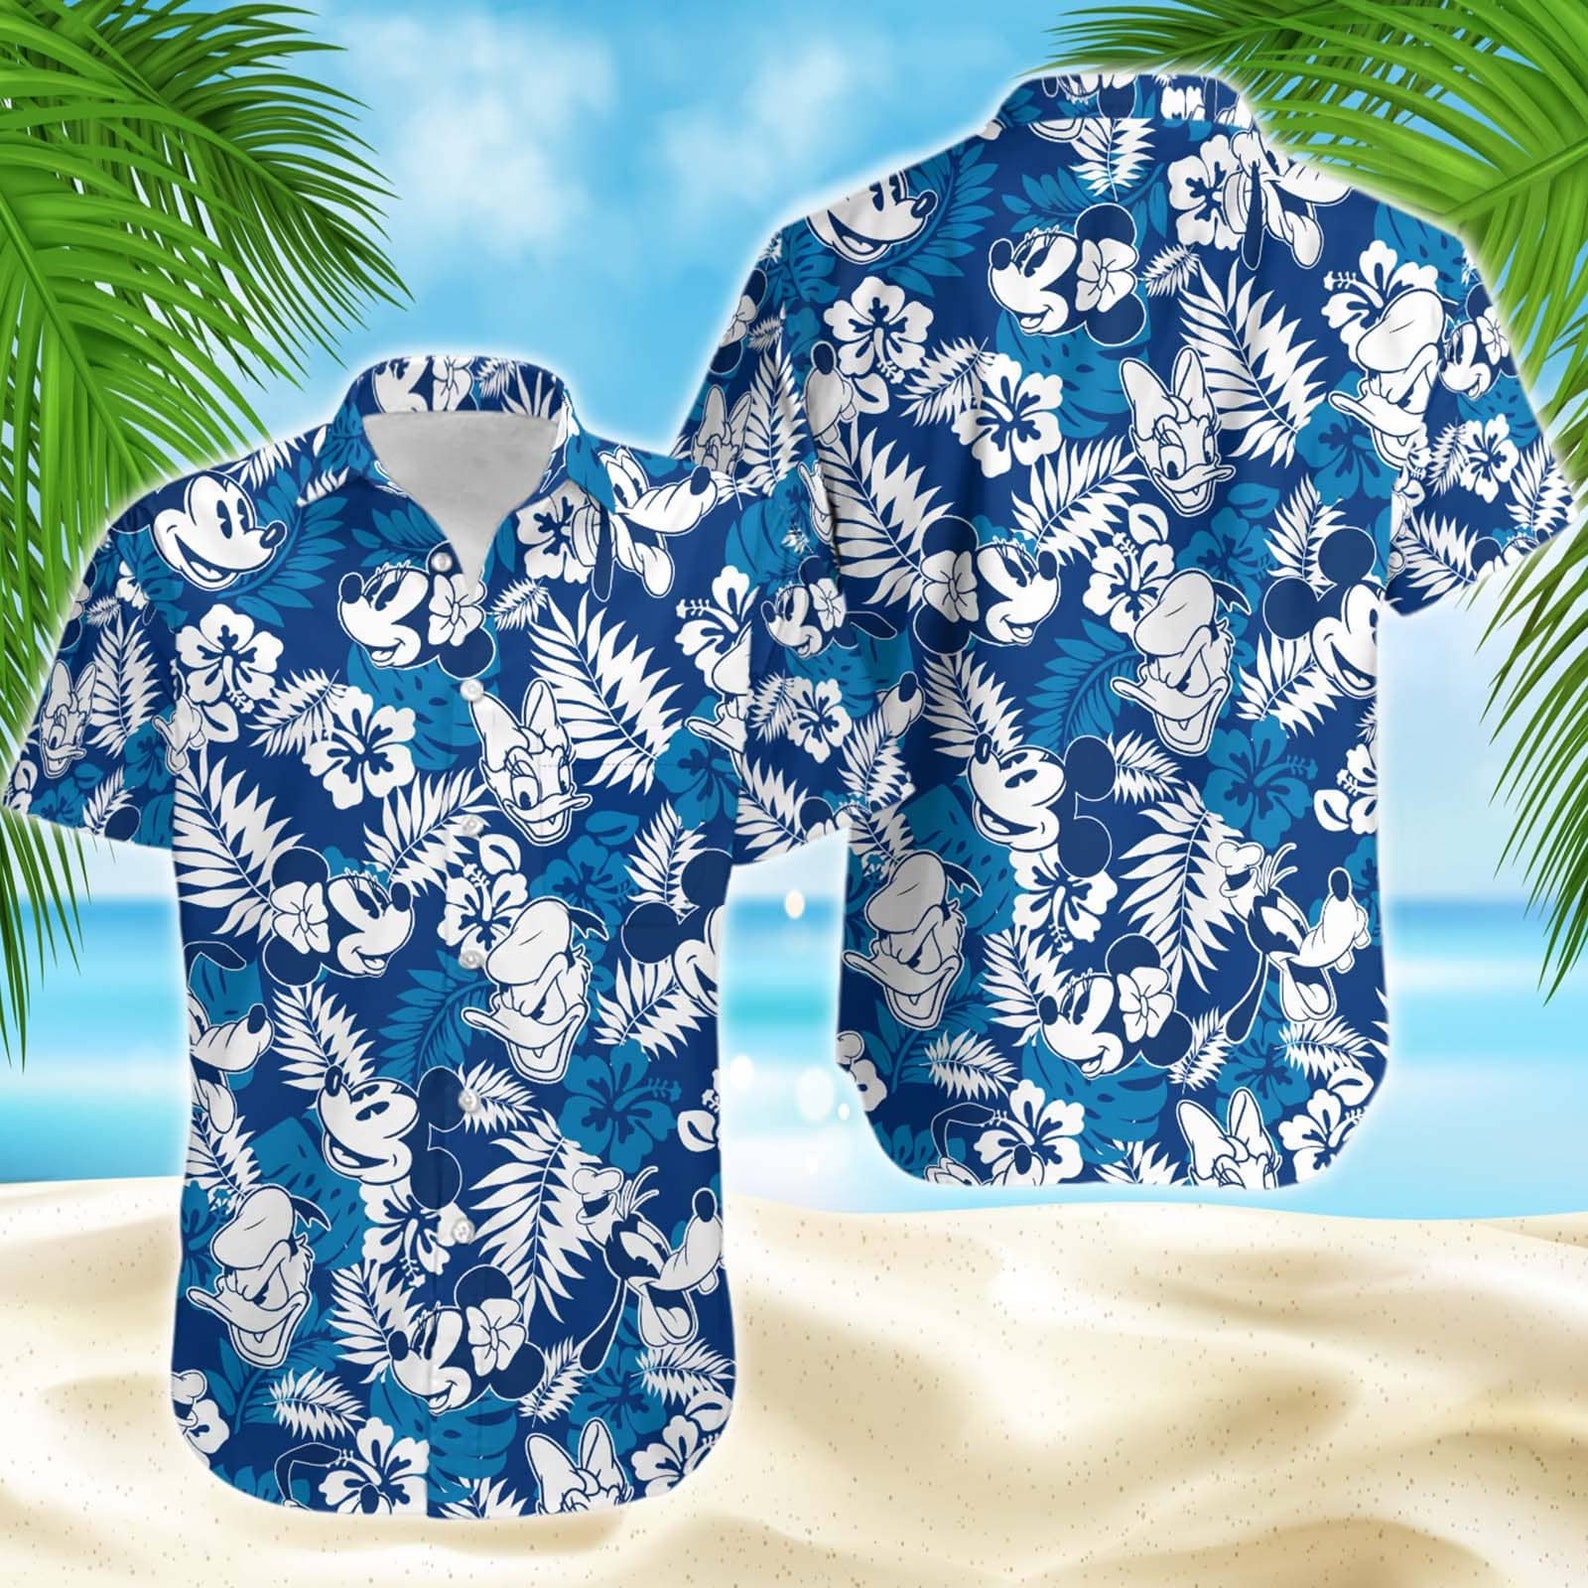 Mickey Donald Daisy Disney Hawaiian Shirt Couple Matching | Etsy